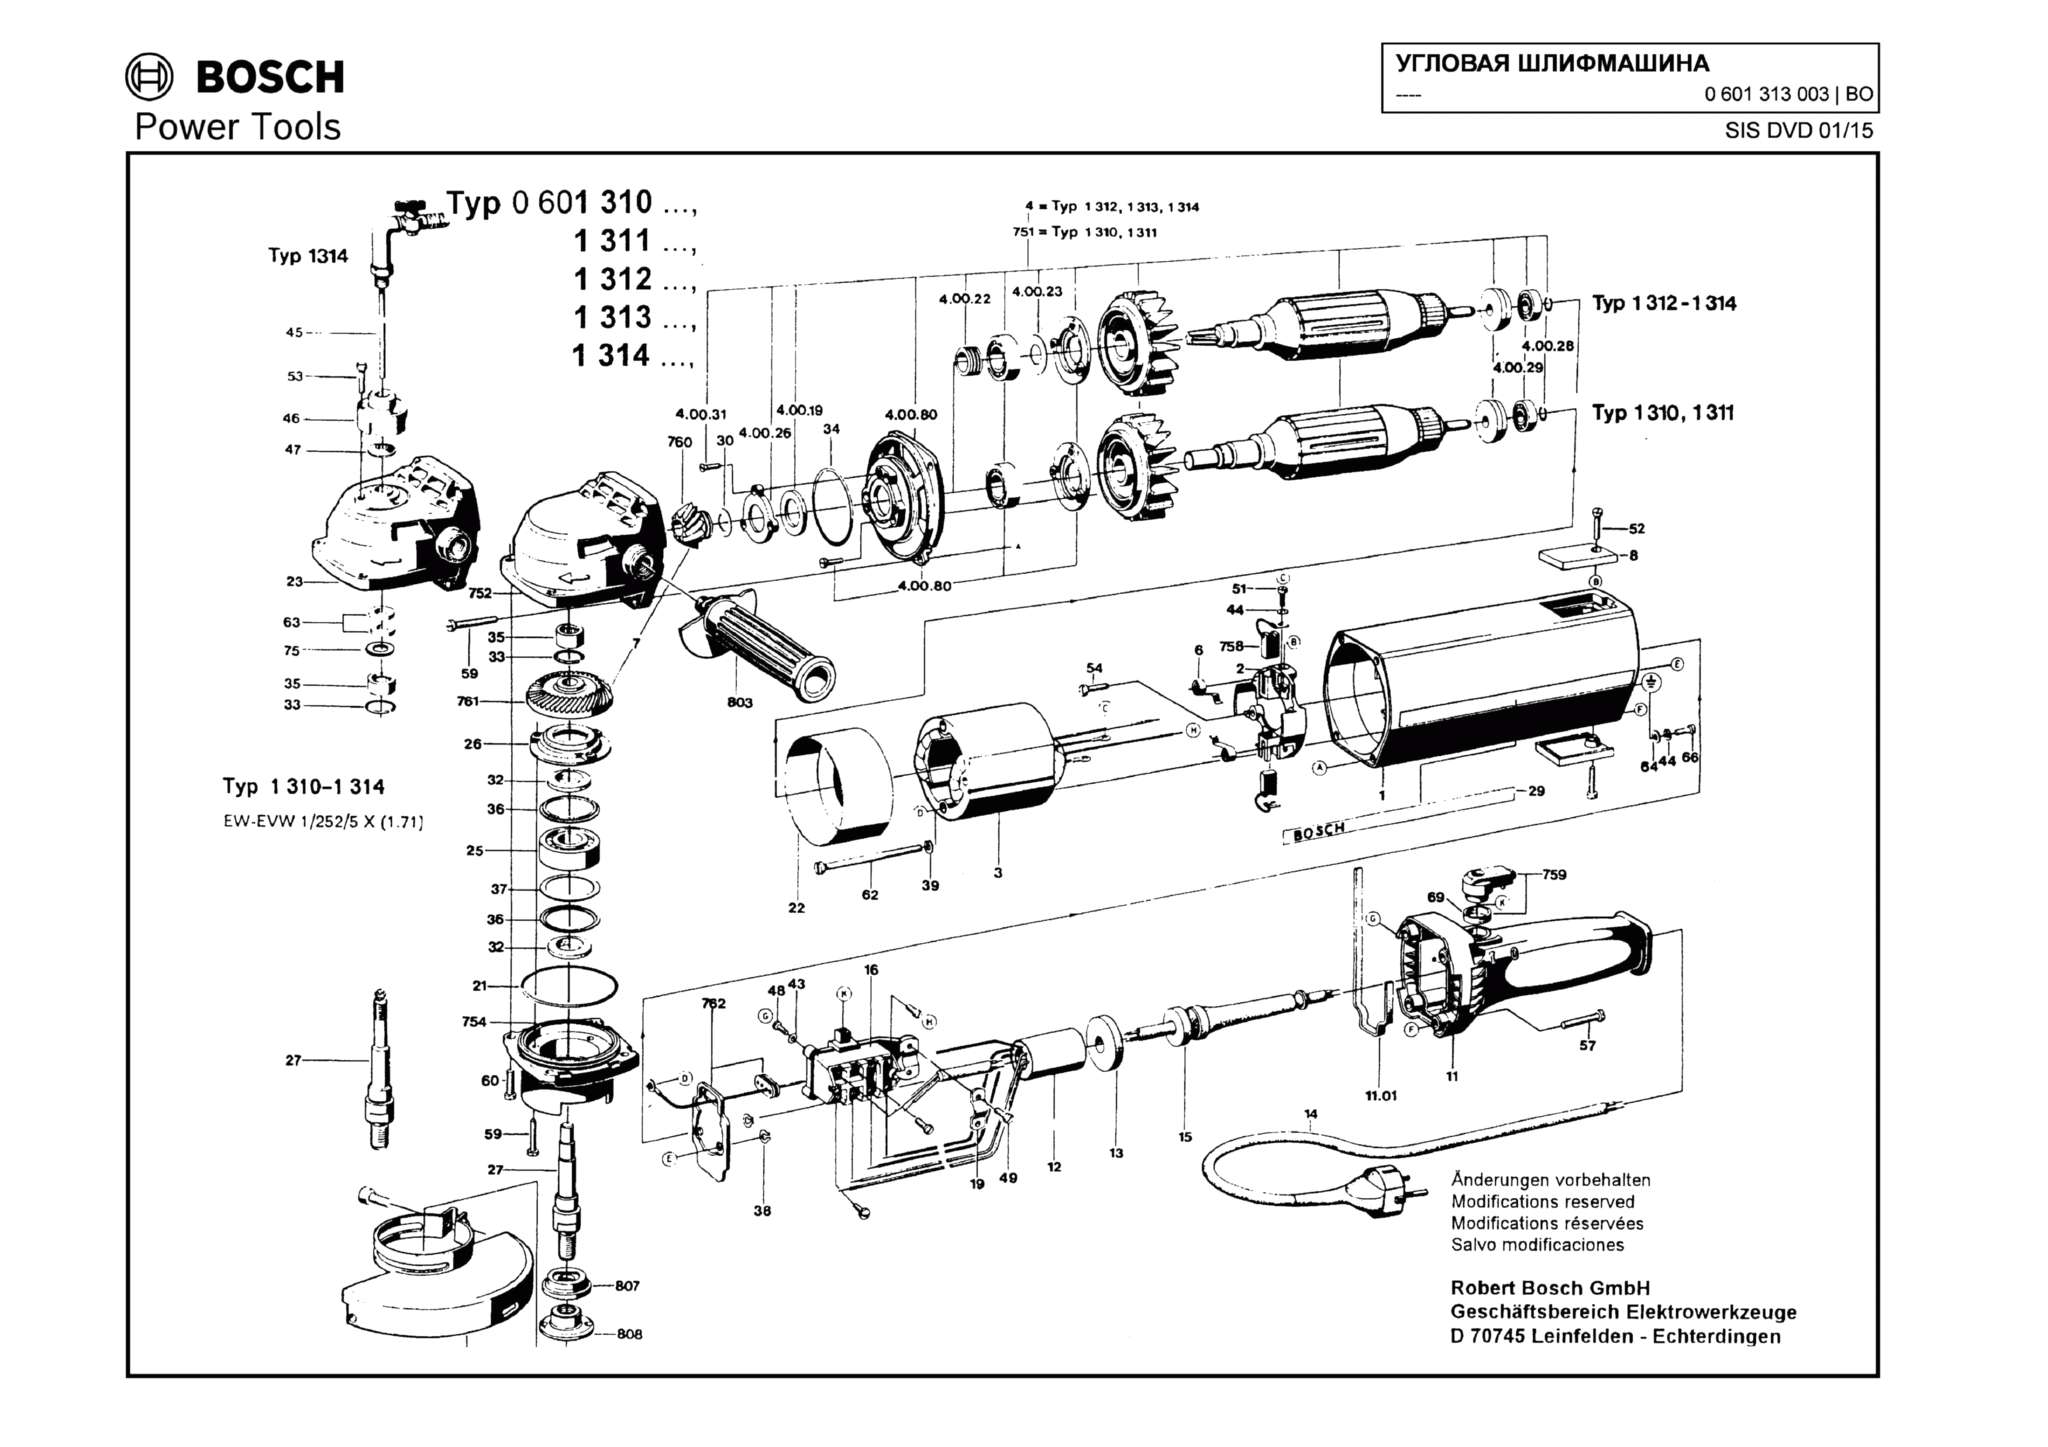 Запчасти, схема и деталировка Bosch (ТИП 0601313003)